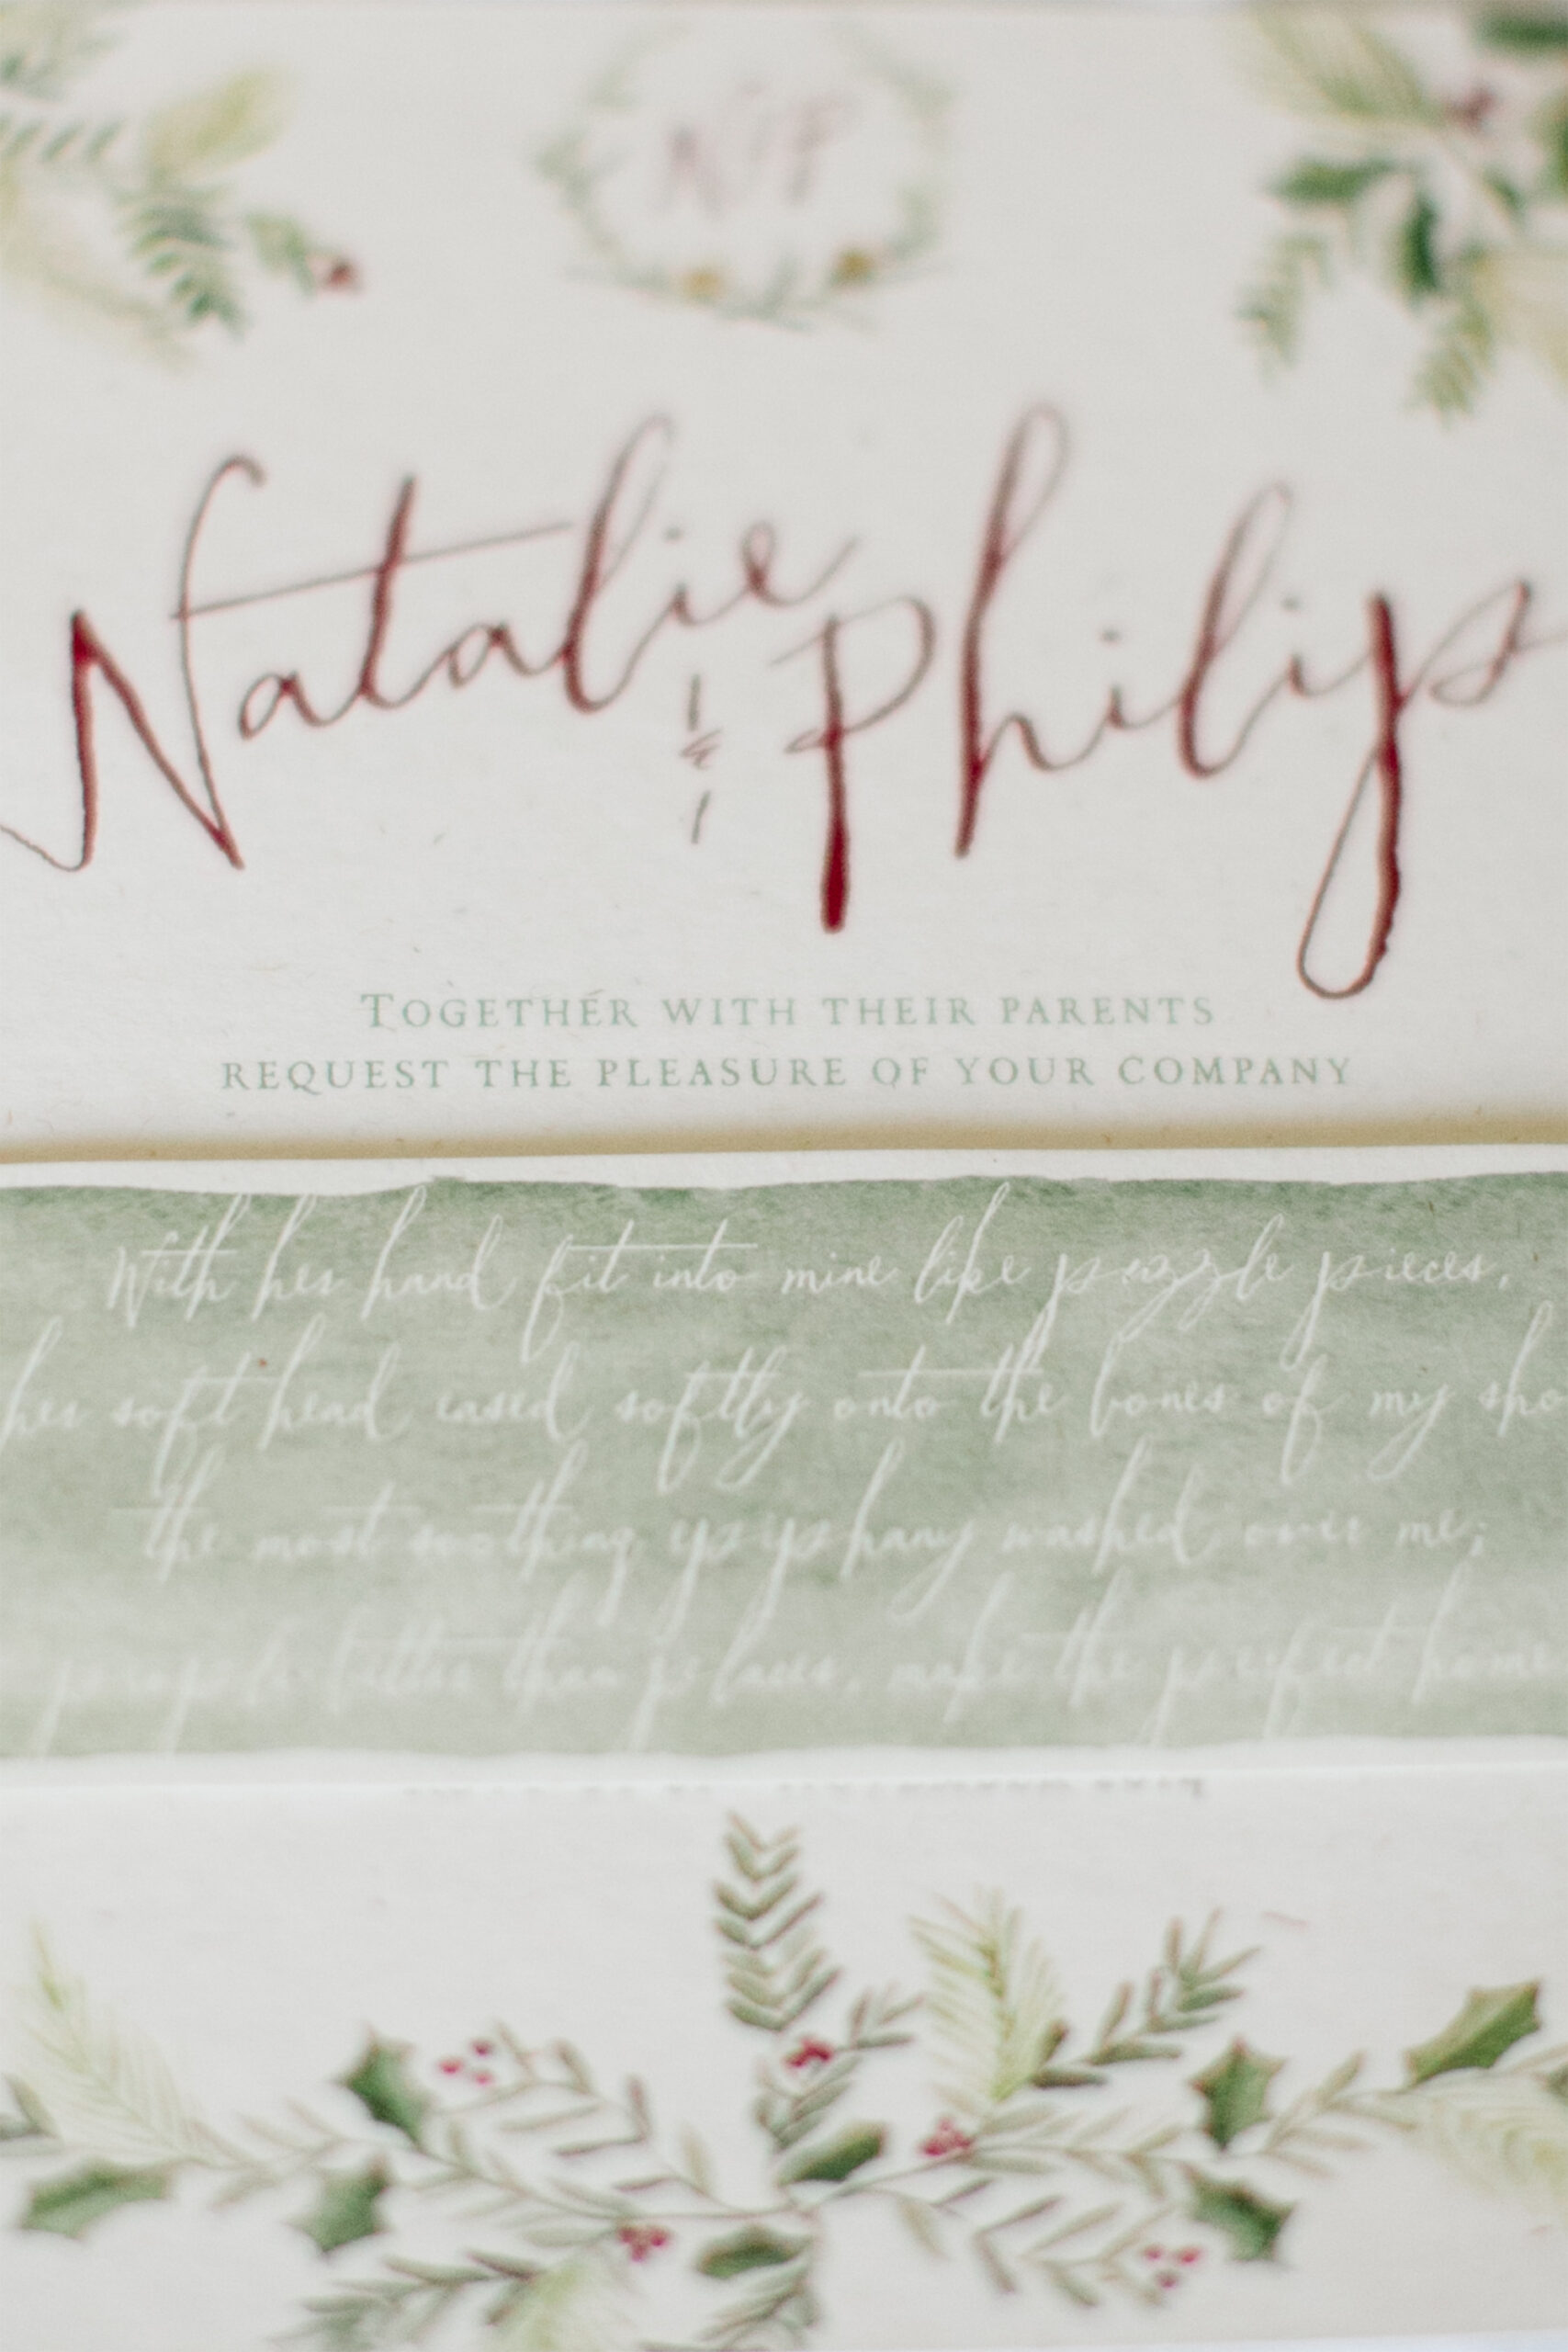 Natalie_Philip_Winter-Wedding_SBS_010